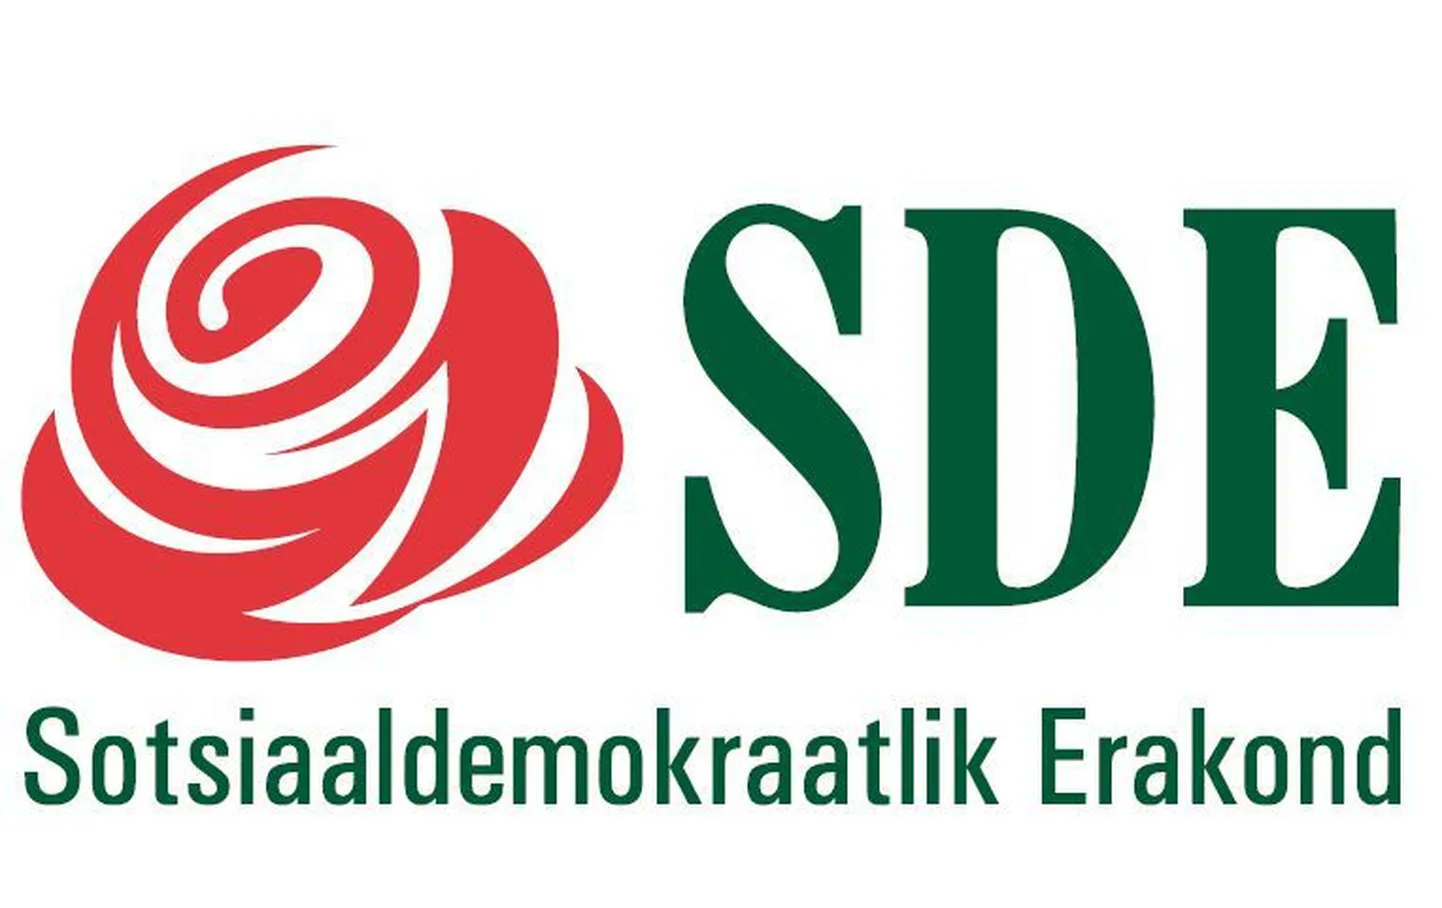 Логотип Социал-демократической партии. Иллюстративное фото.